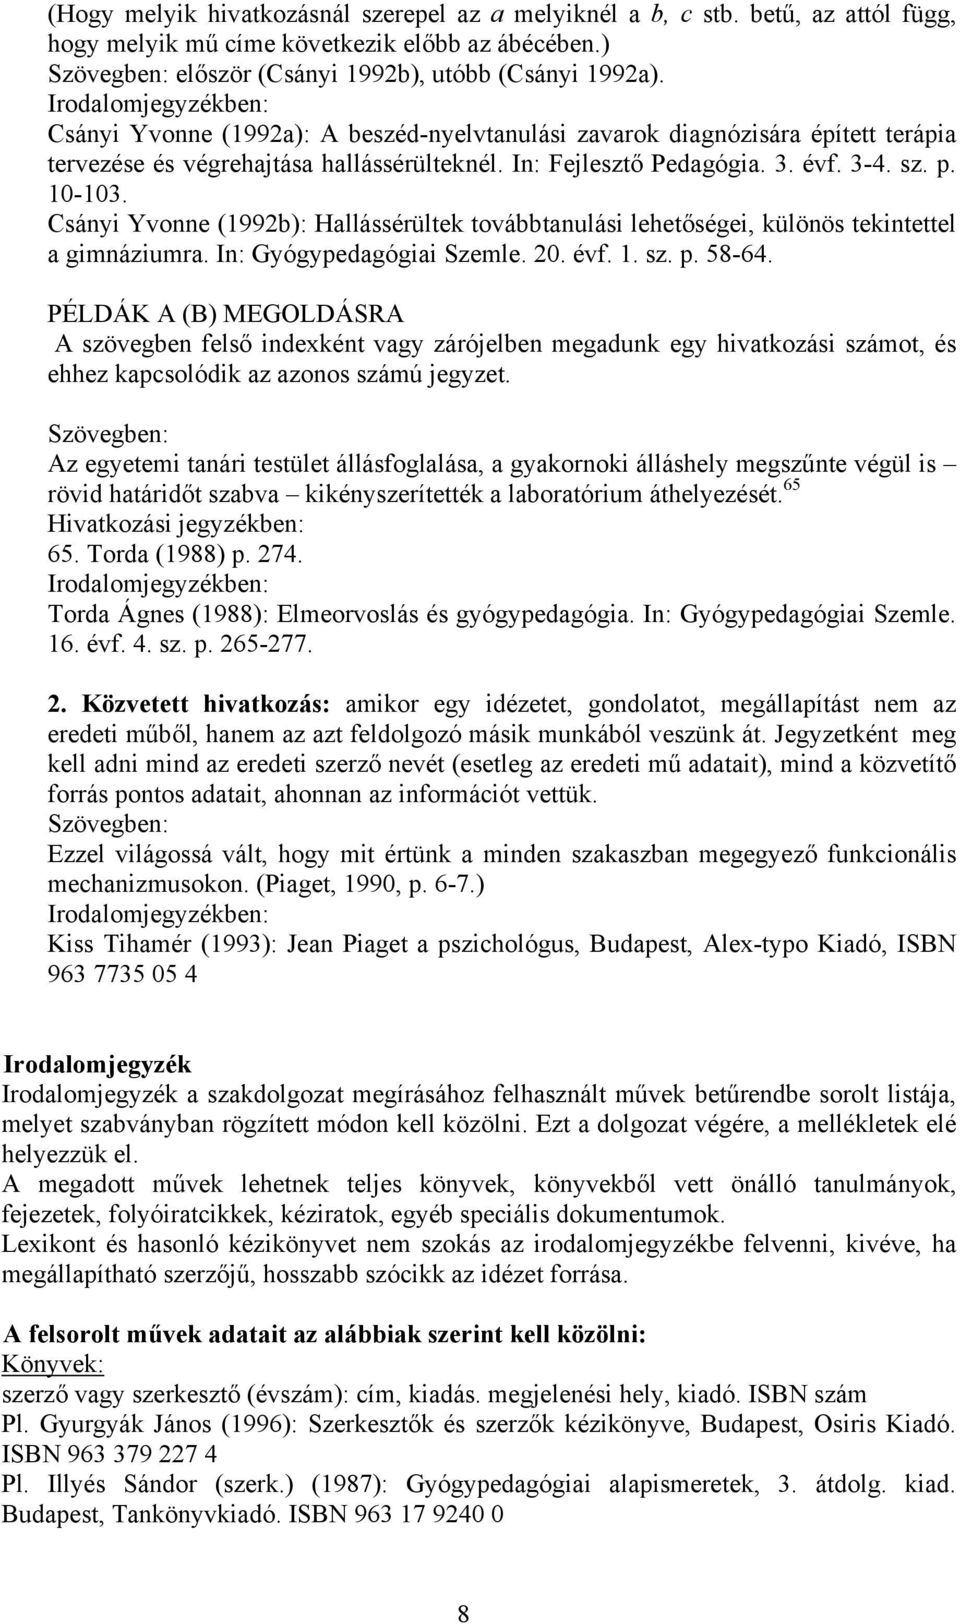 Csányi Yvonne (1992b): Hallássérültek továbbtanulási lehetőségei, különös tekintettel a gimnáziumra. In: Gyógypedagógiai Szemle. 20. évf. 1. sz. p. 58-64.